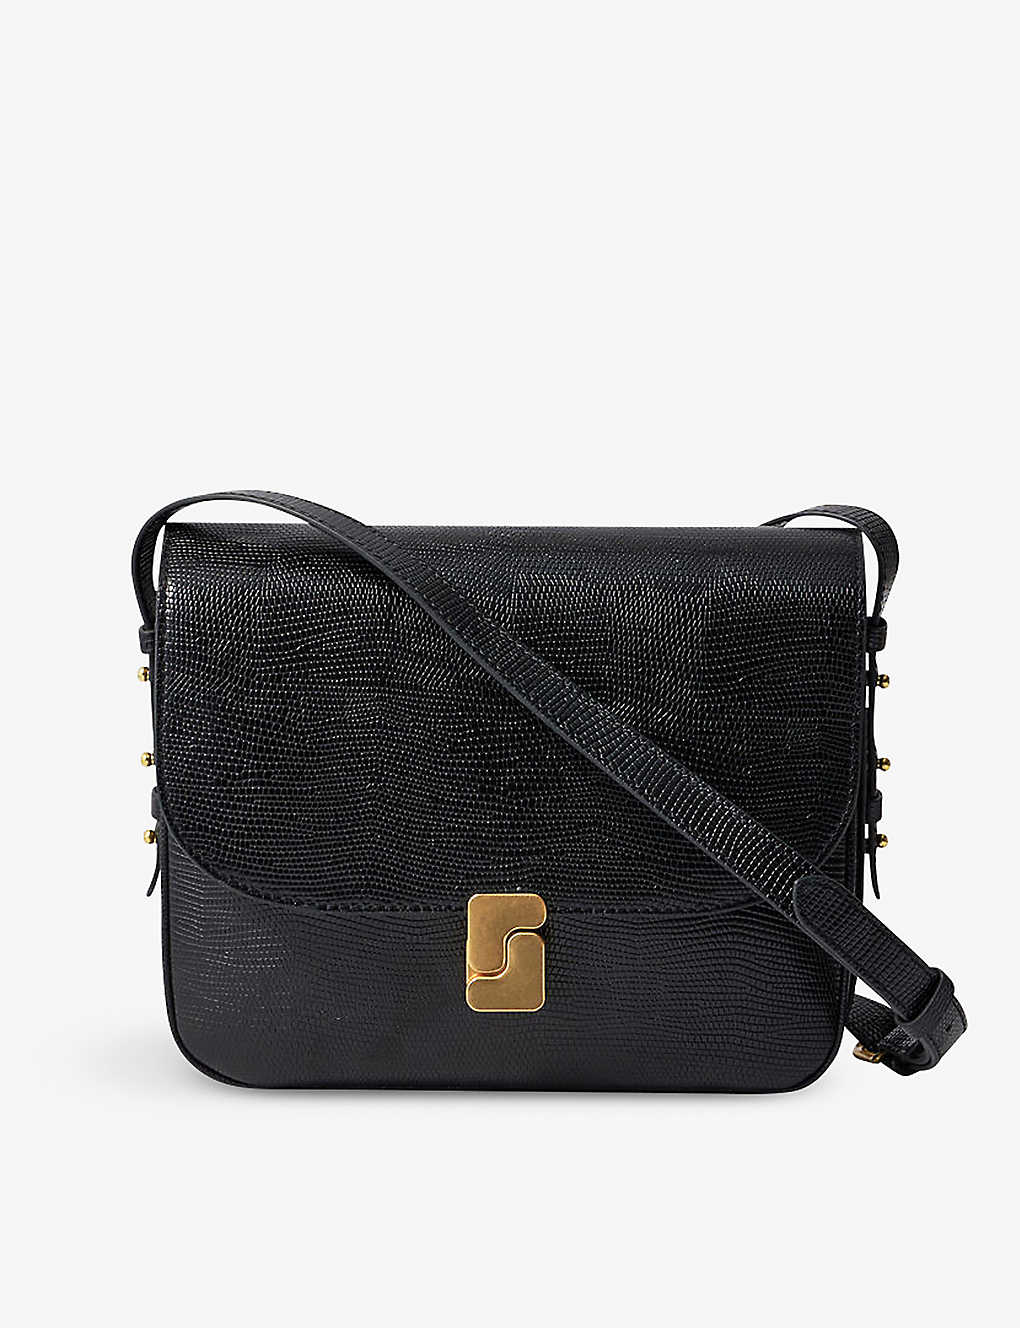 Soeur Bellissima Maxi Leather Shoulder Bag In Black